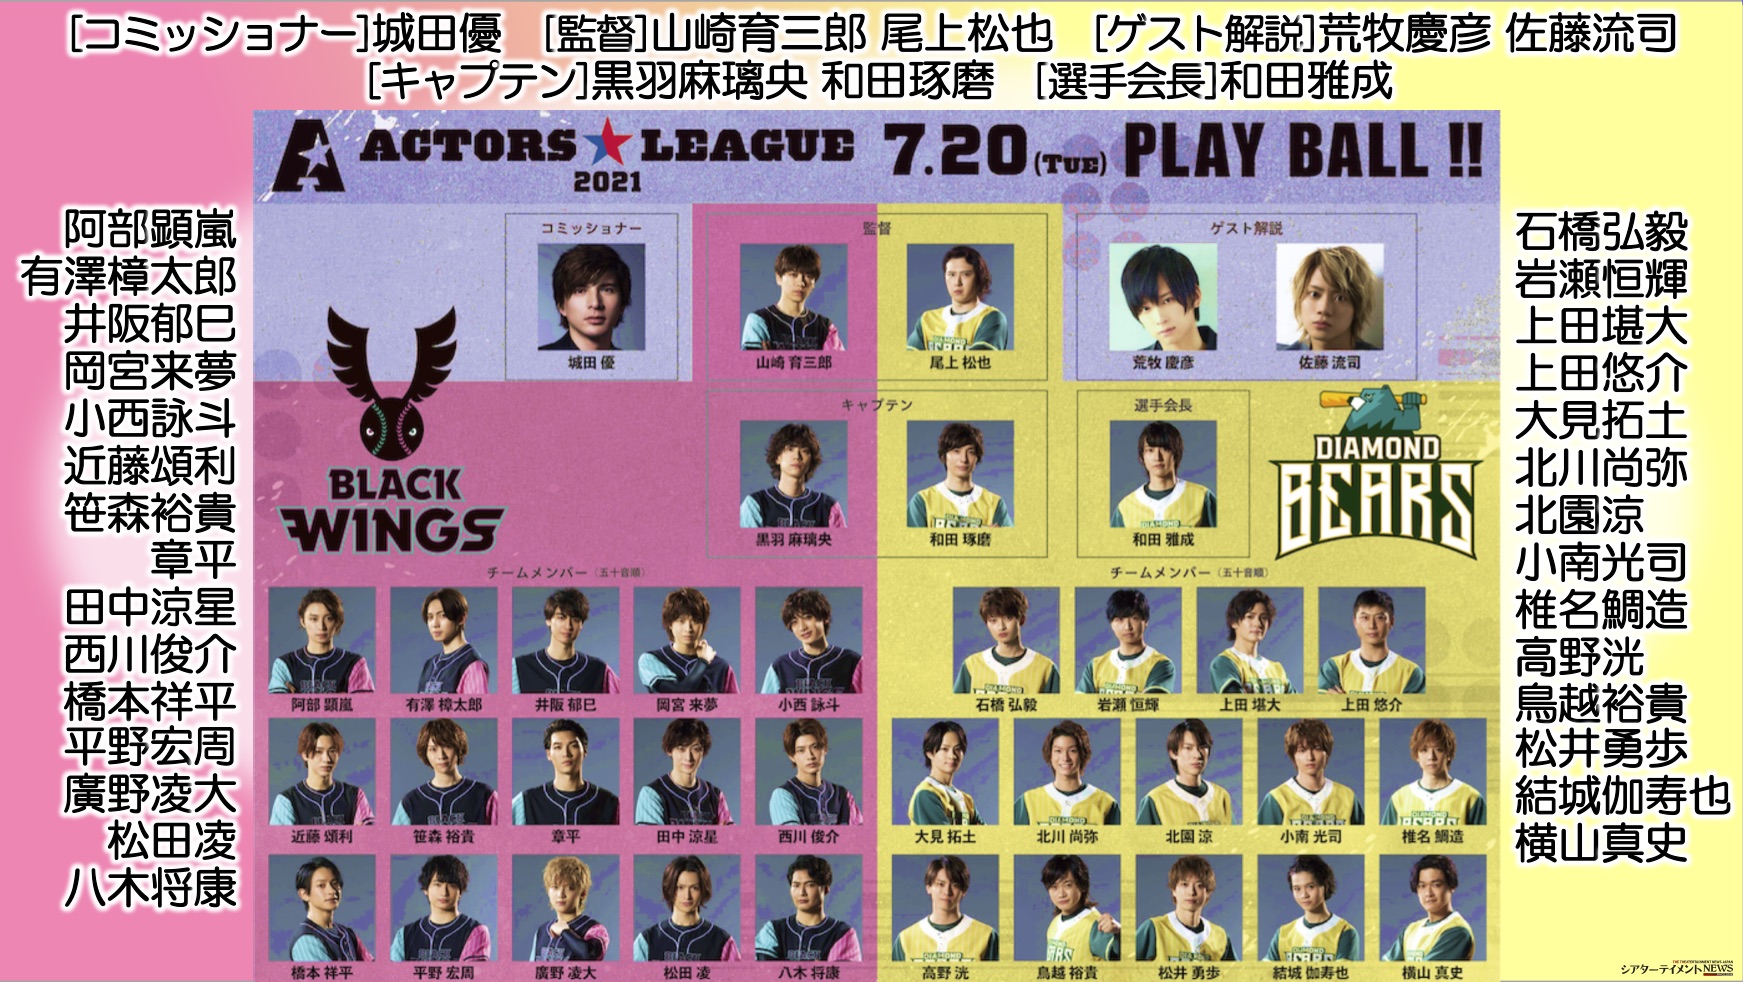 アクターズリーグ ACTORS☆LEAGUE 2021 Blu-ray